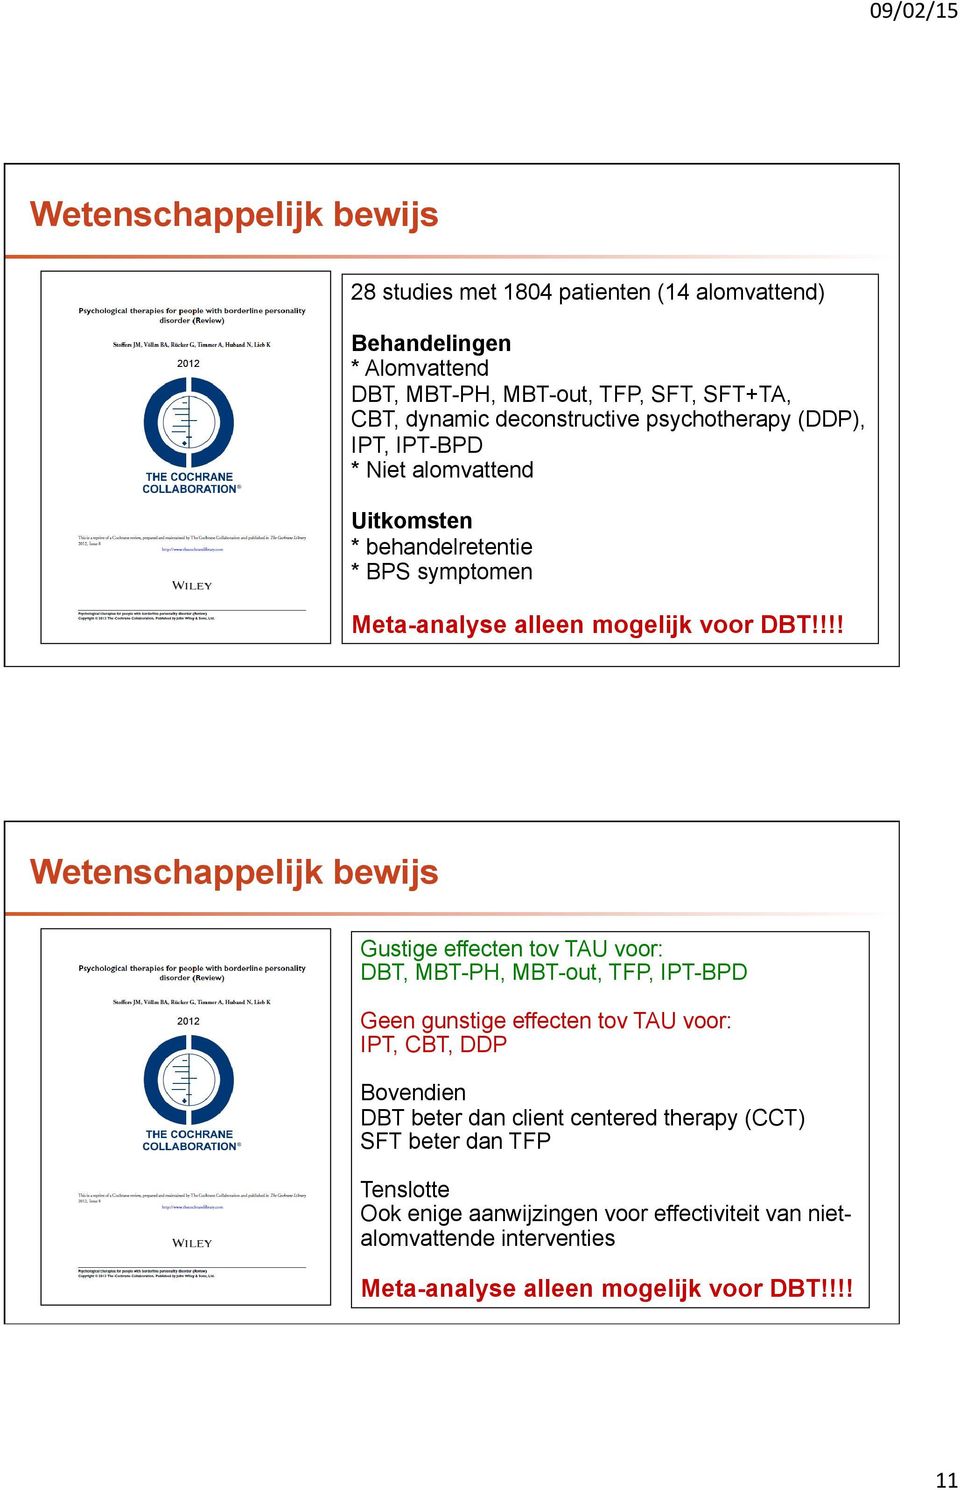 !!! Wetenschappelijk bewijs Gustige effecten tov TAU voor: DBT, MBT-PH, MBT-out, TFP, IPT-BPD 2012 Geen gunstige effecten tov TAU voor: IPT, CBT, DDP Bovendien DBT